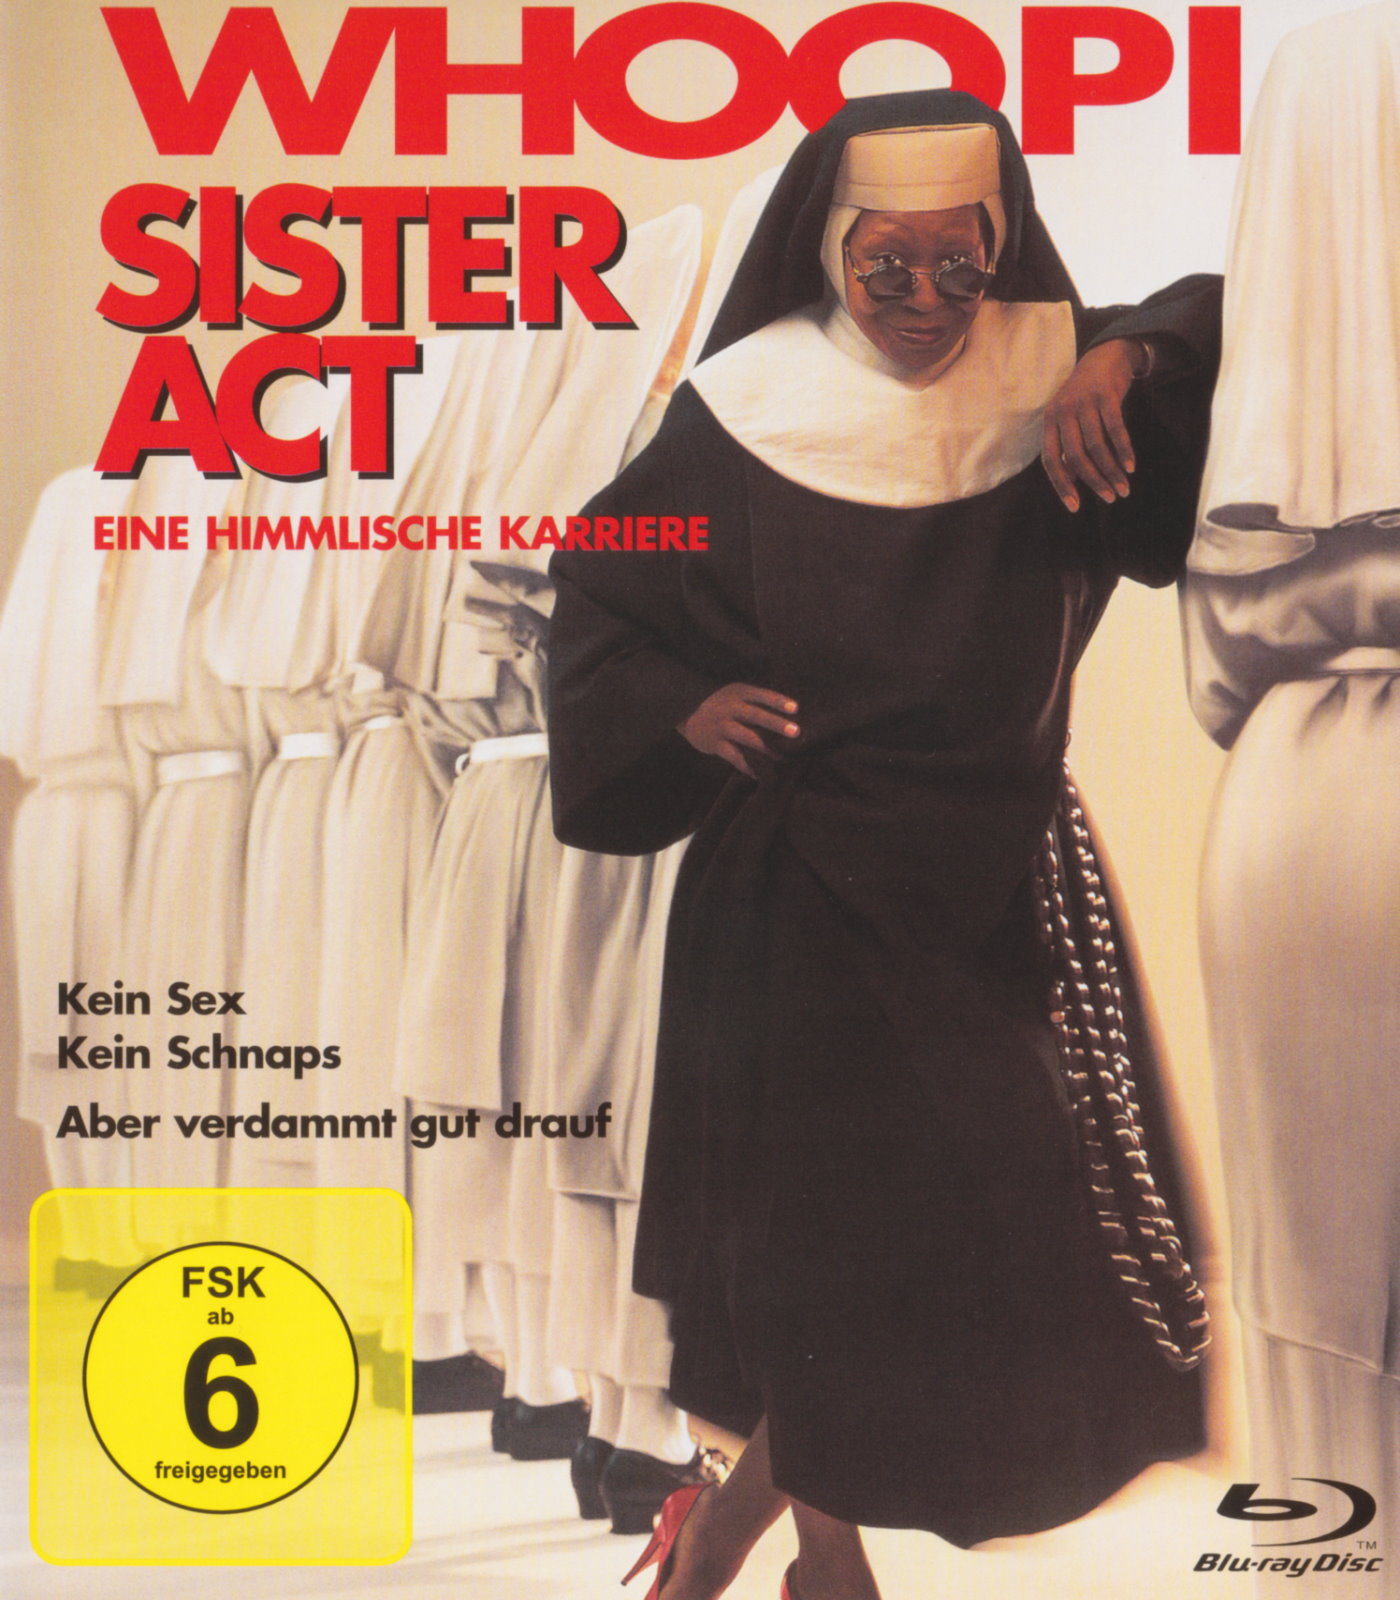 Cover - Sister Act - Eine himmlische Karriere.jpg